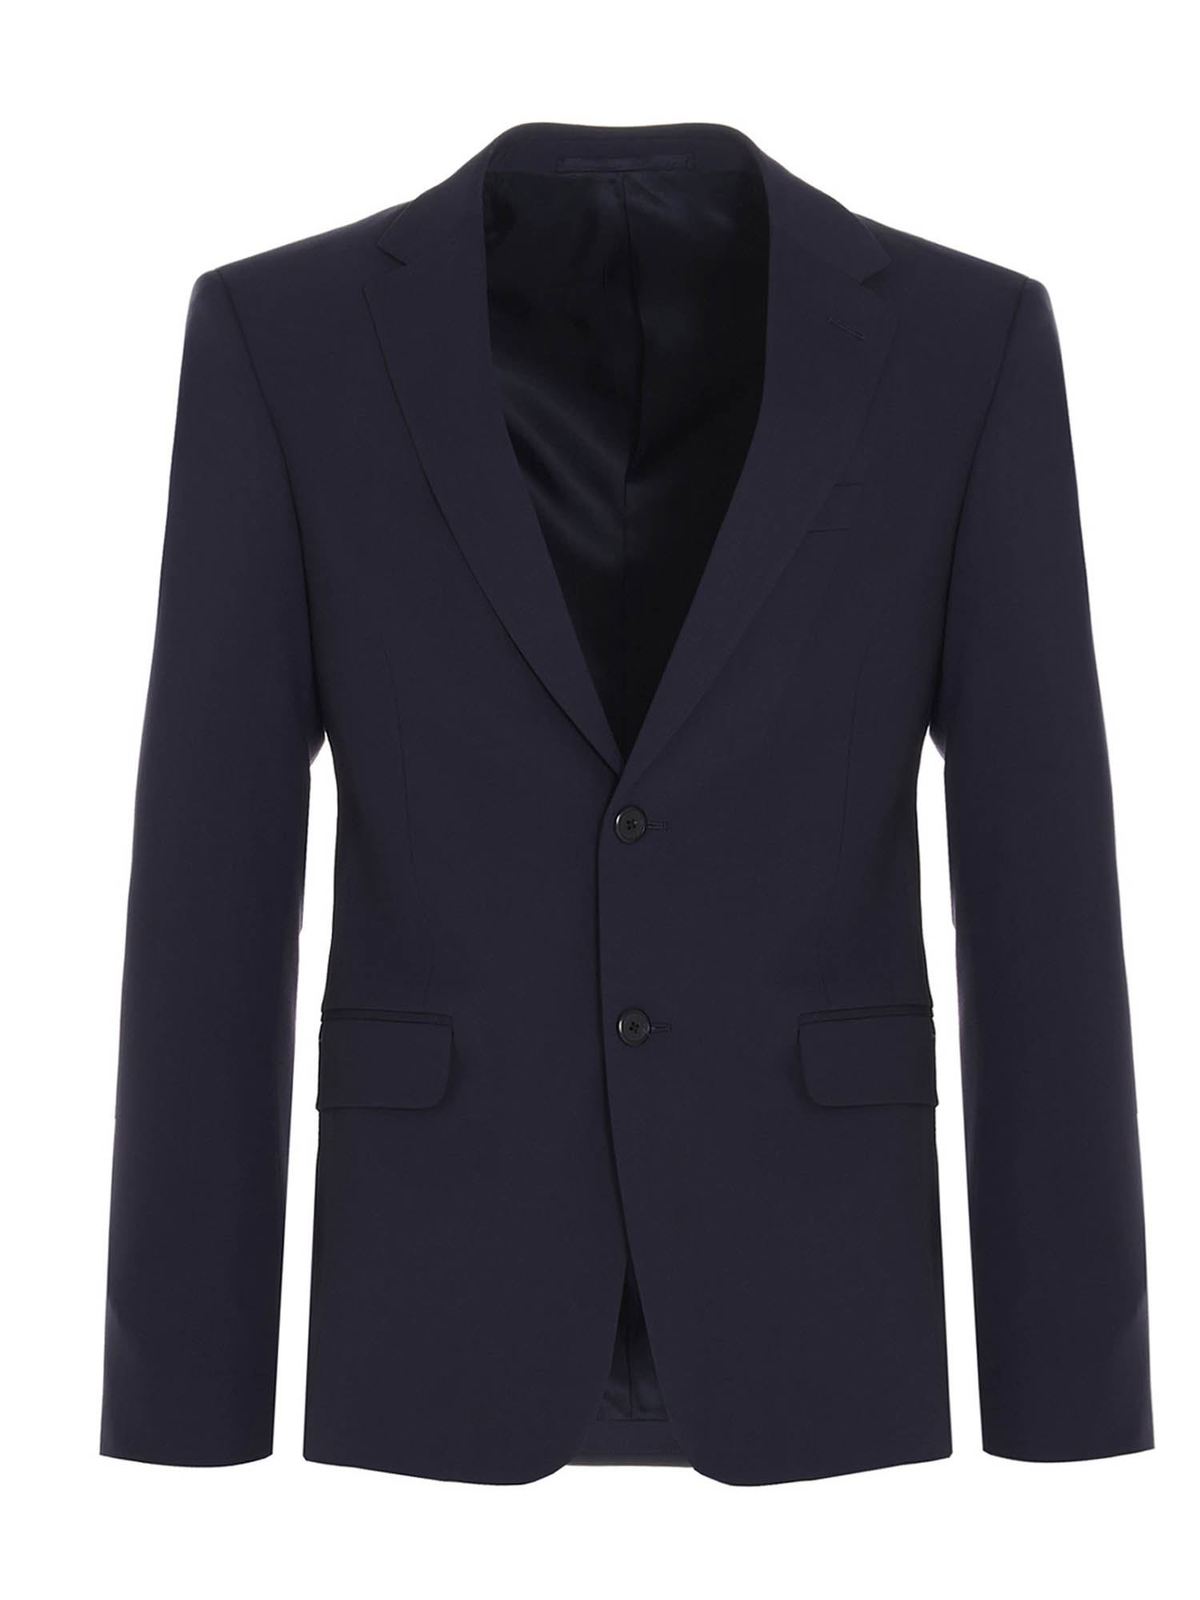 prada blue suit